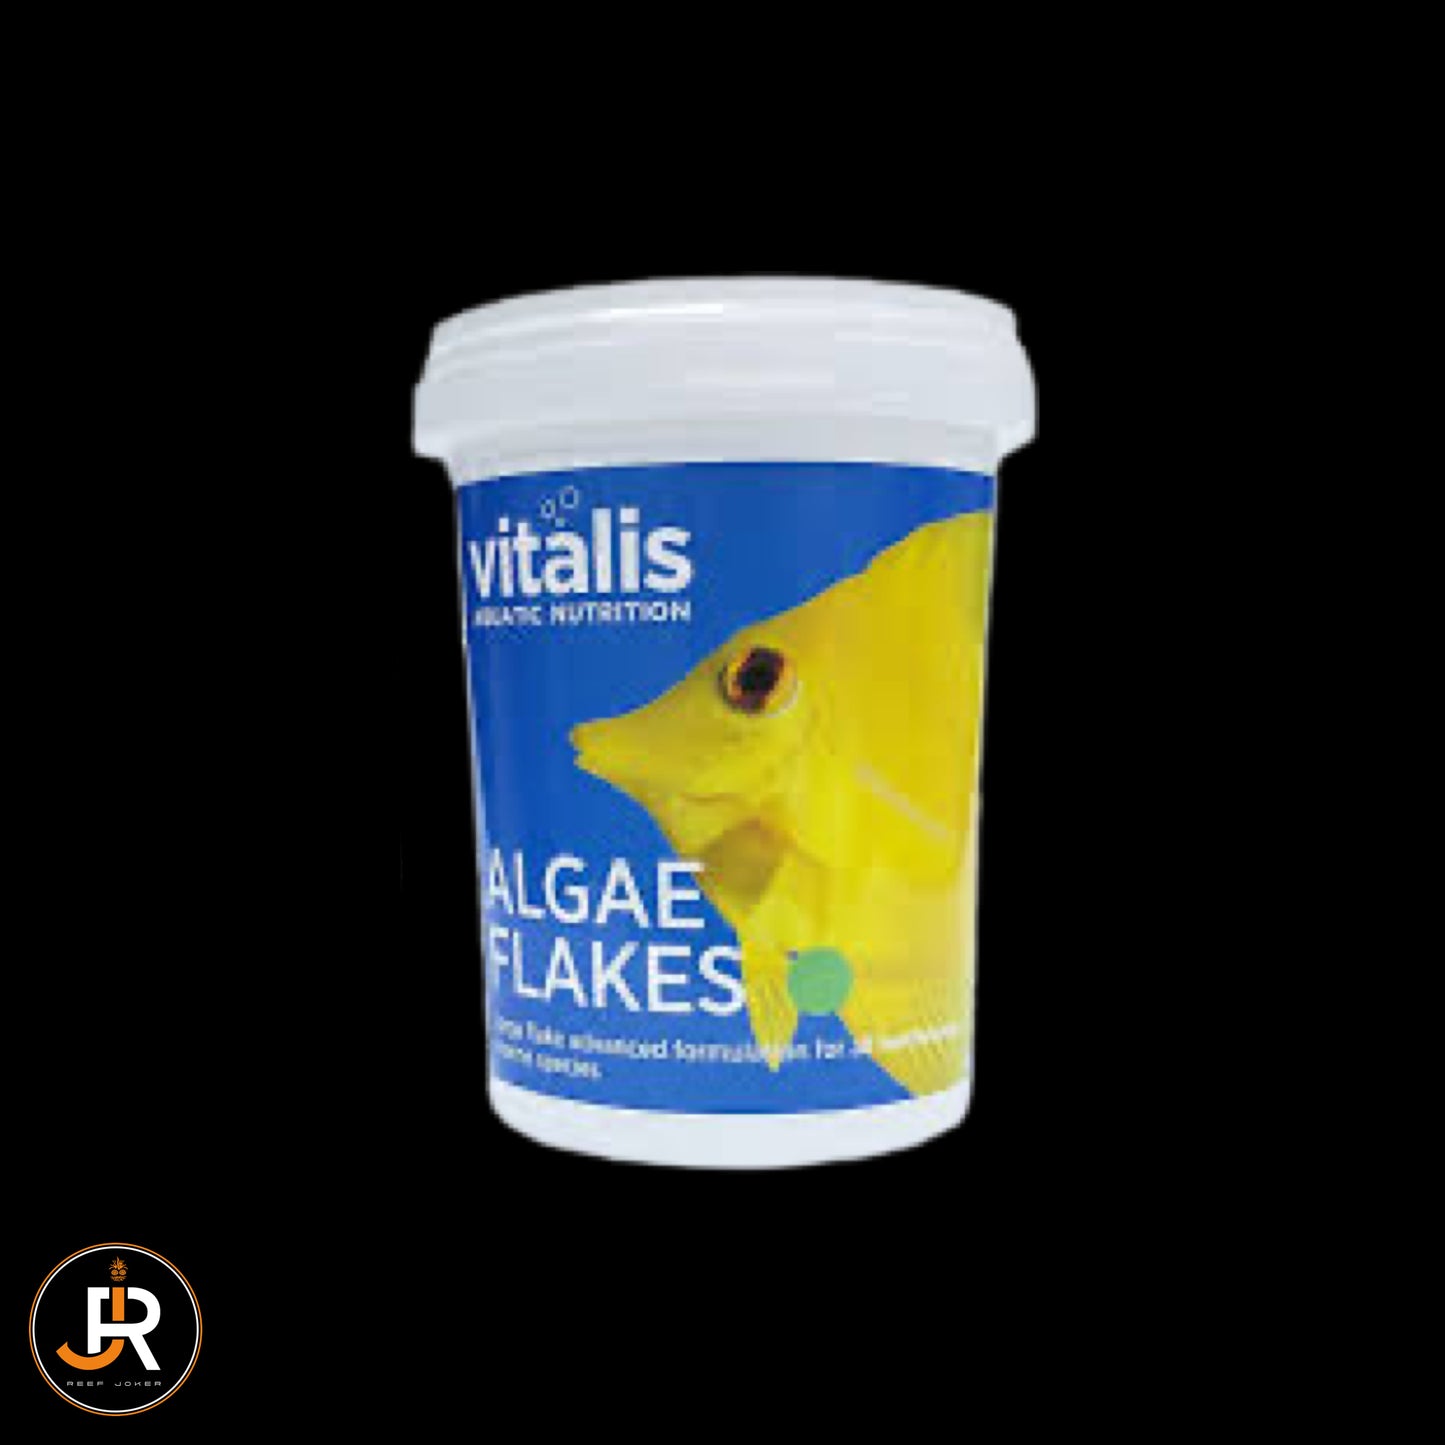 Vitalis - Algae Flakes